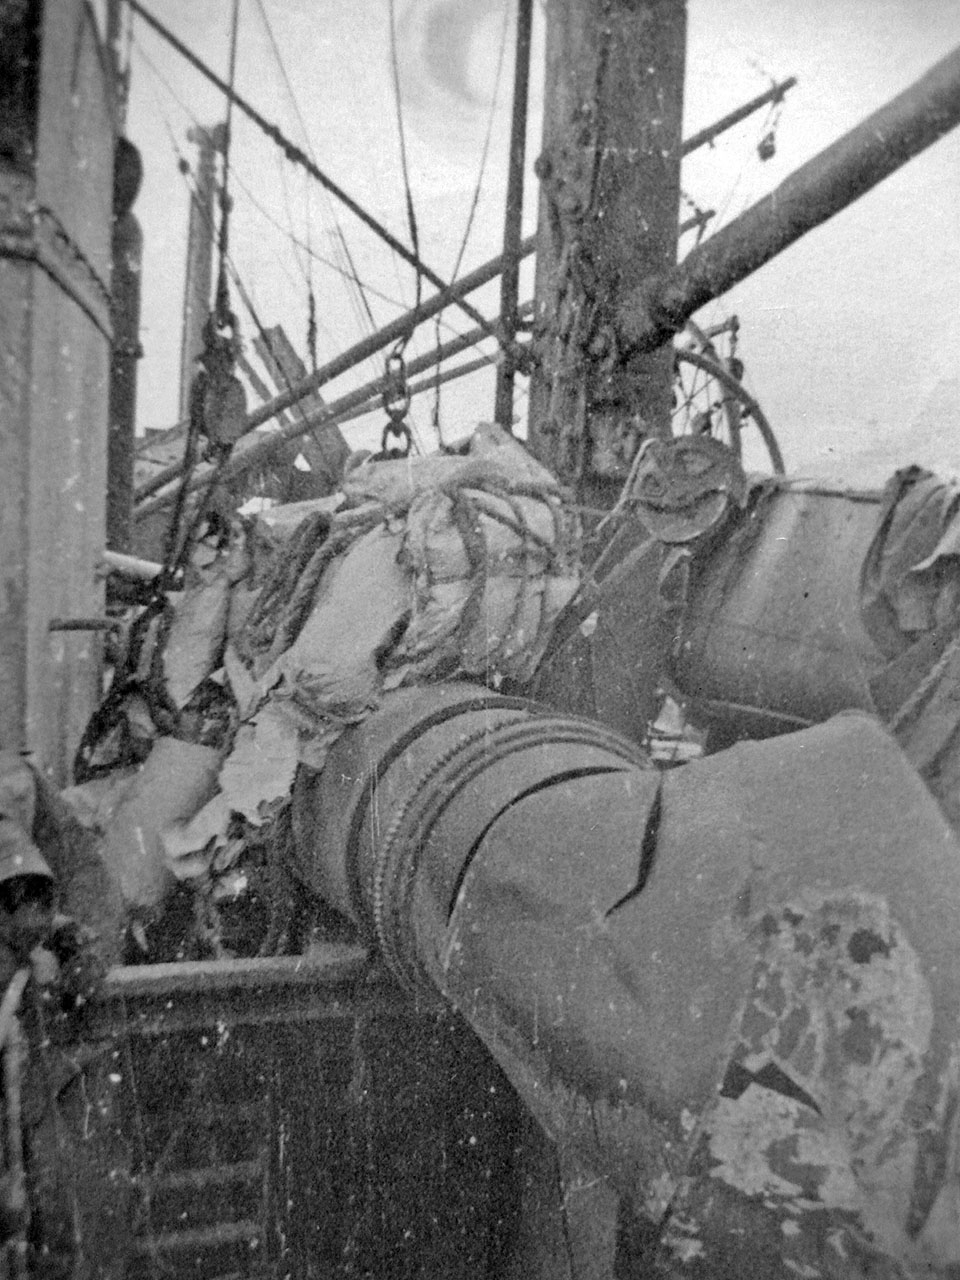 Сломанные взрывной волной паровые трубы на палубе парохода «Минск» в торговом порту. Последствия взрывов пароходов 19 декабря 1947 года.